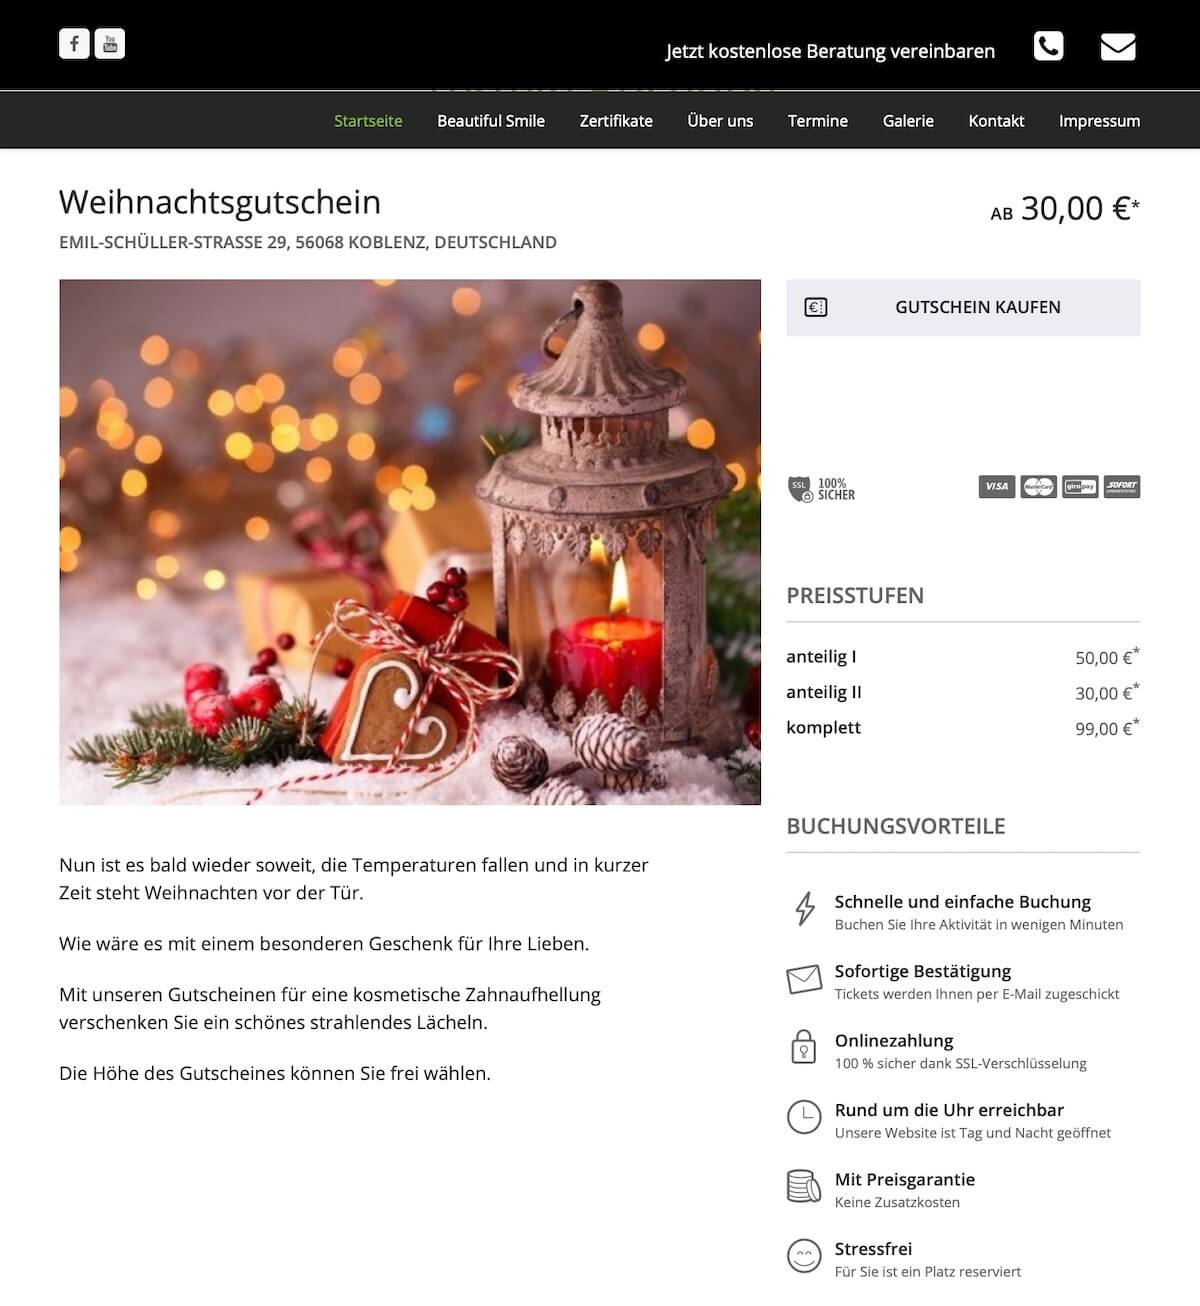 bookingkit-marketing-weihnachten-beispiel-beautiful-smile